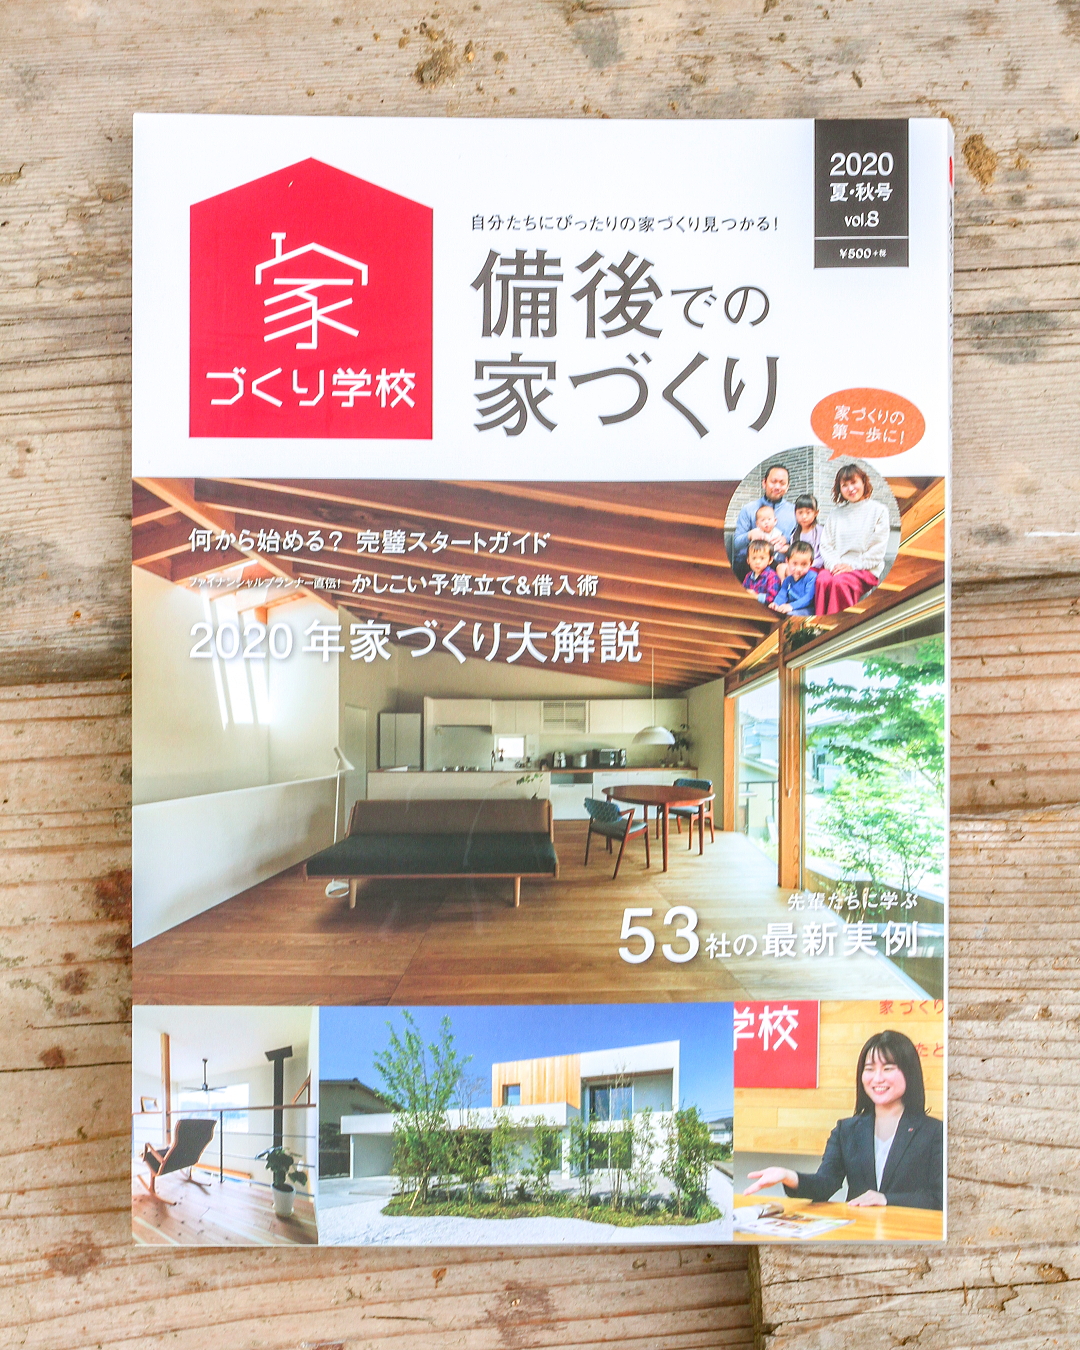 福山市の注文住宅の建て方の情報誌「備後での家づくり」工務店コアハウスの住まい手さまのおしゃれな家も掲載